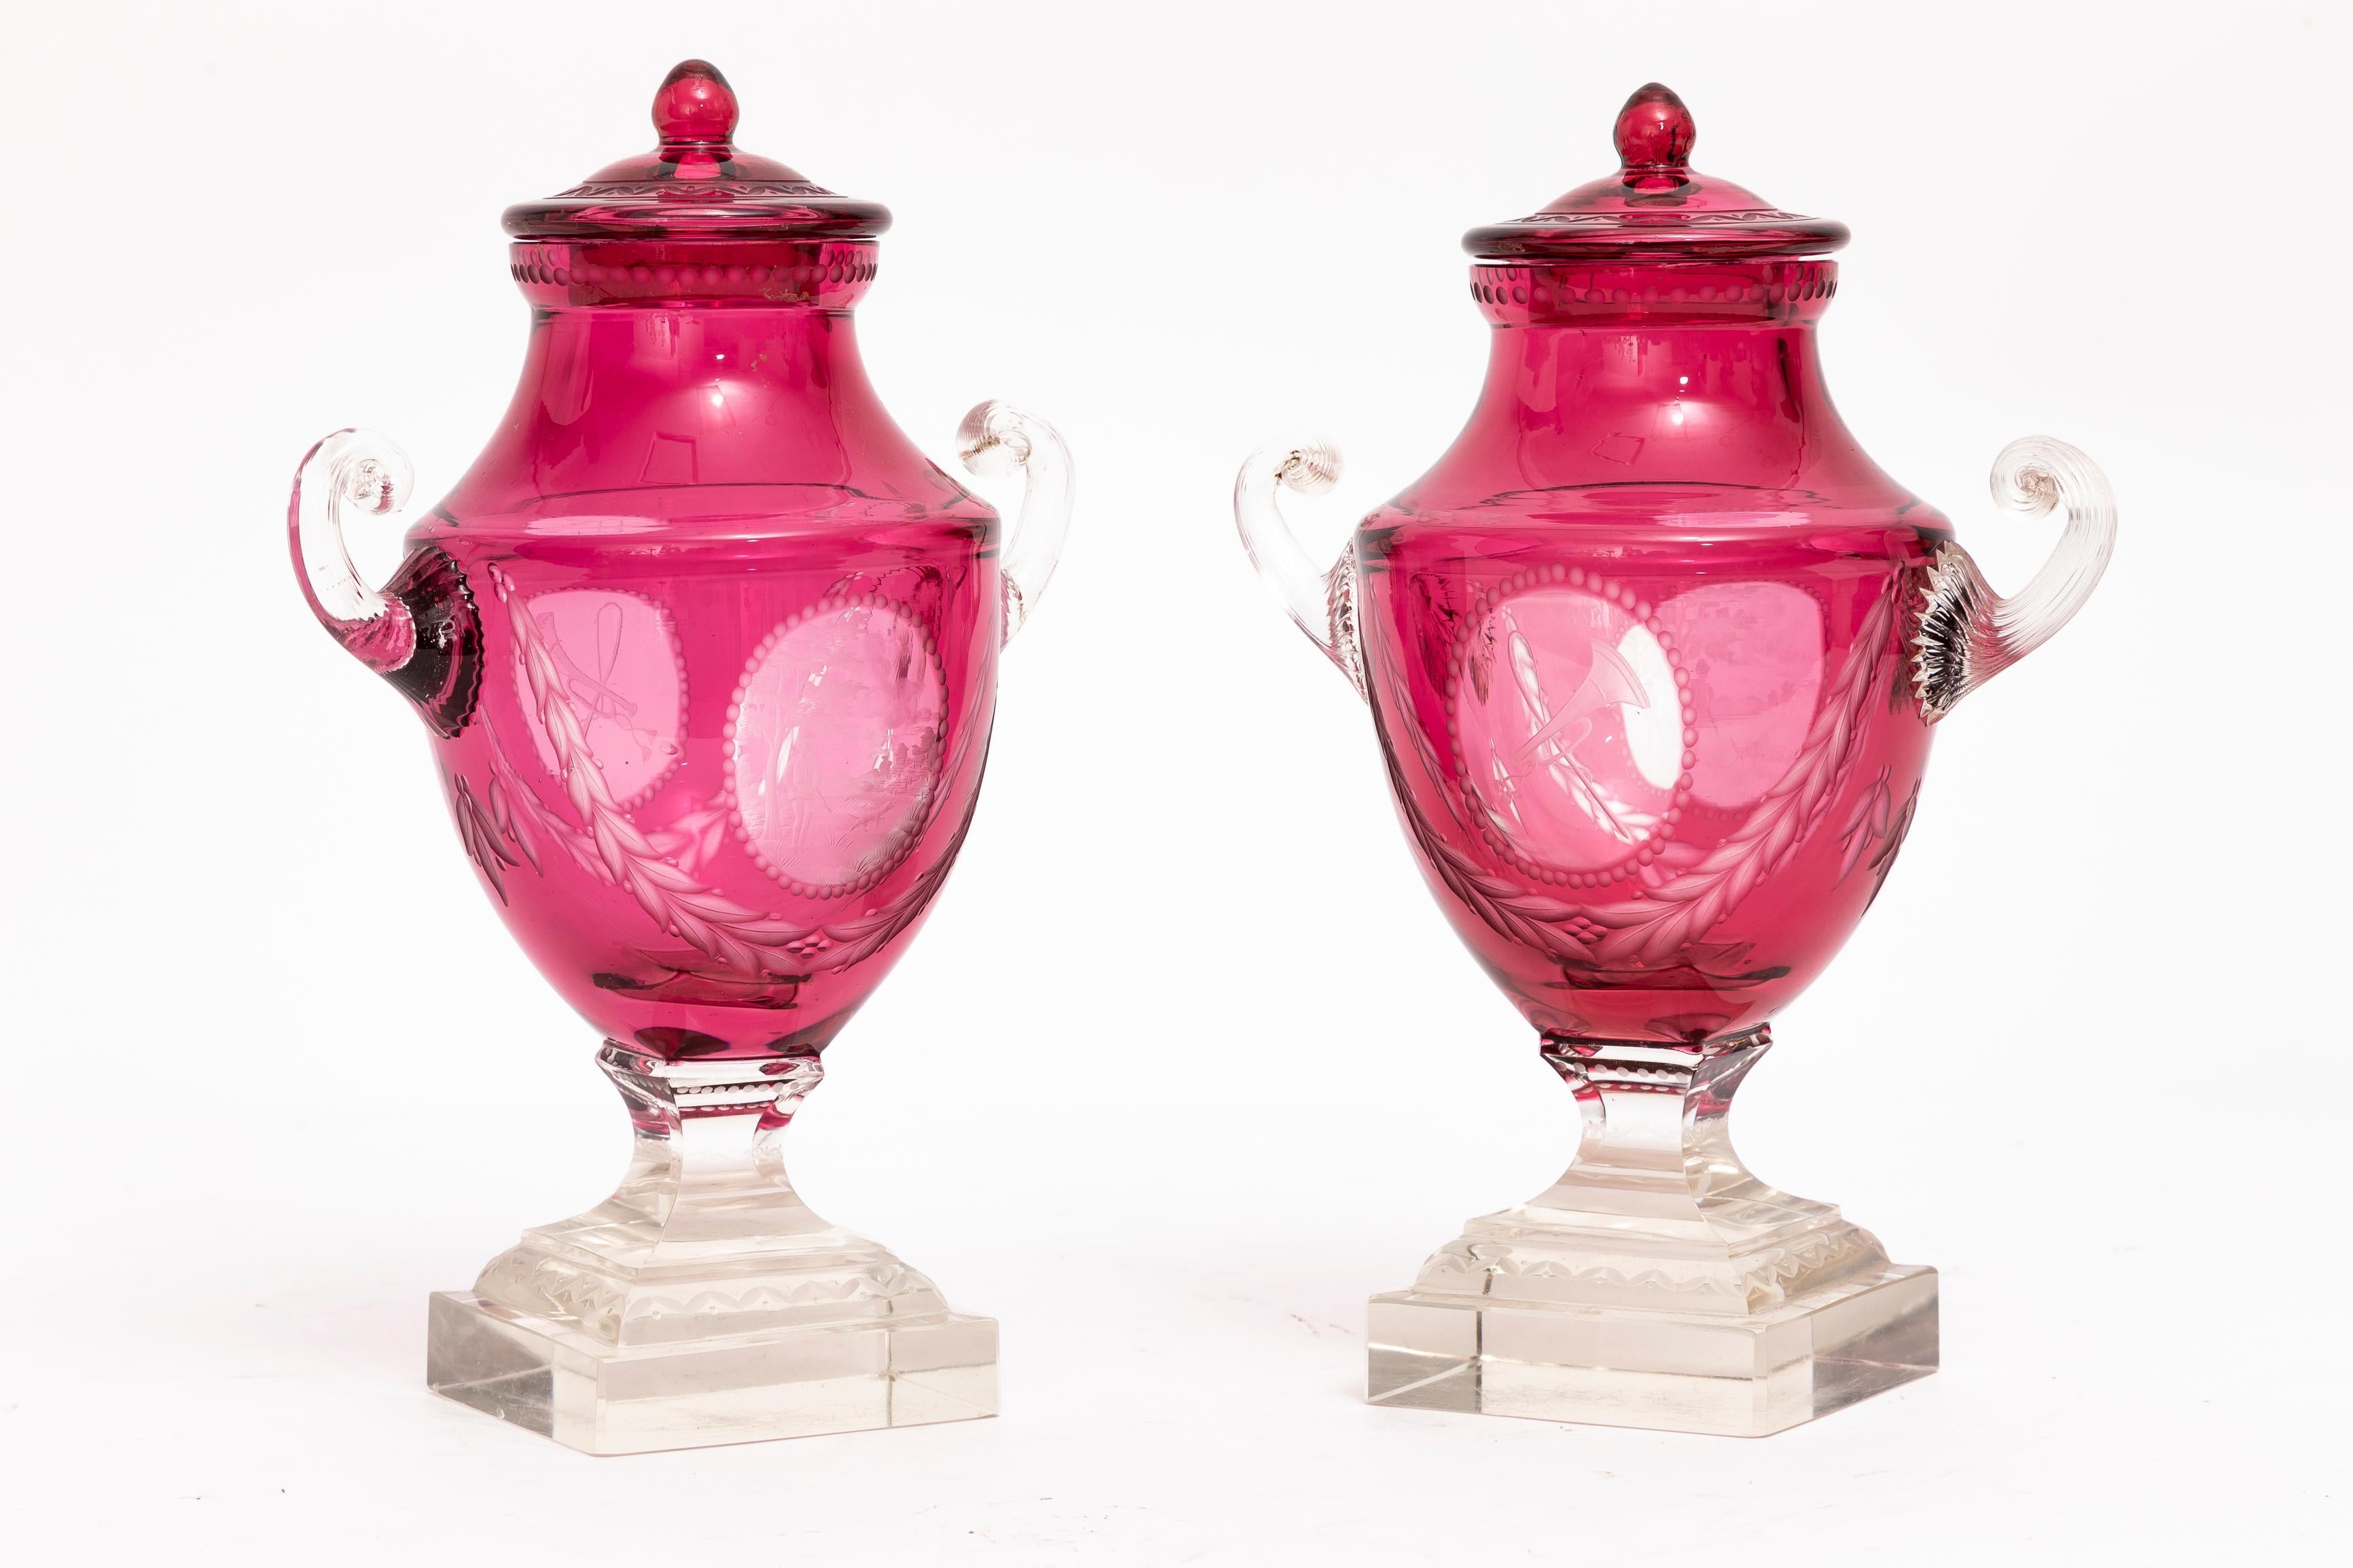 Ein prächtiges Paar überzogener Kristallvasen mit doppeltem Überzug in Cranberry, geschliffen und klar, mit Muschelgriffen und gestuften Sockeln, Baccarat zugeschrieben. Diese Vasen zeichnen sich durch ihren satten Cranberry-Farbton, die sorgfältig